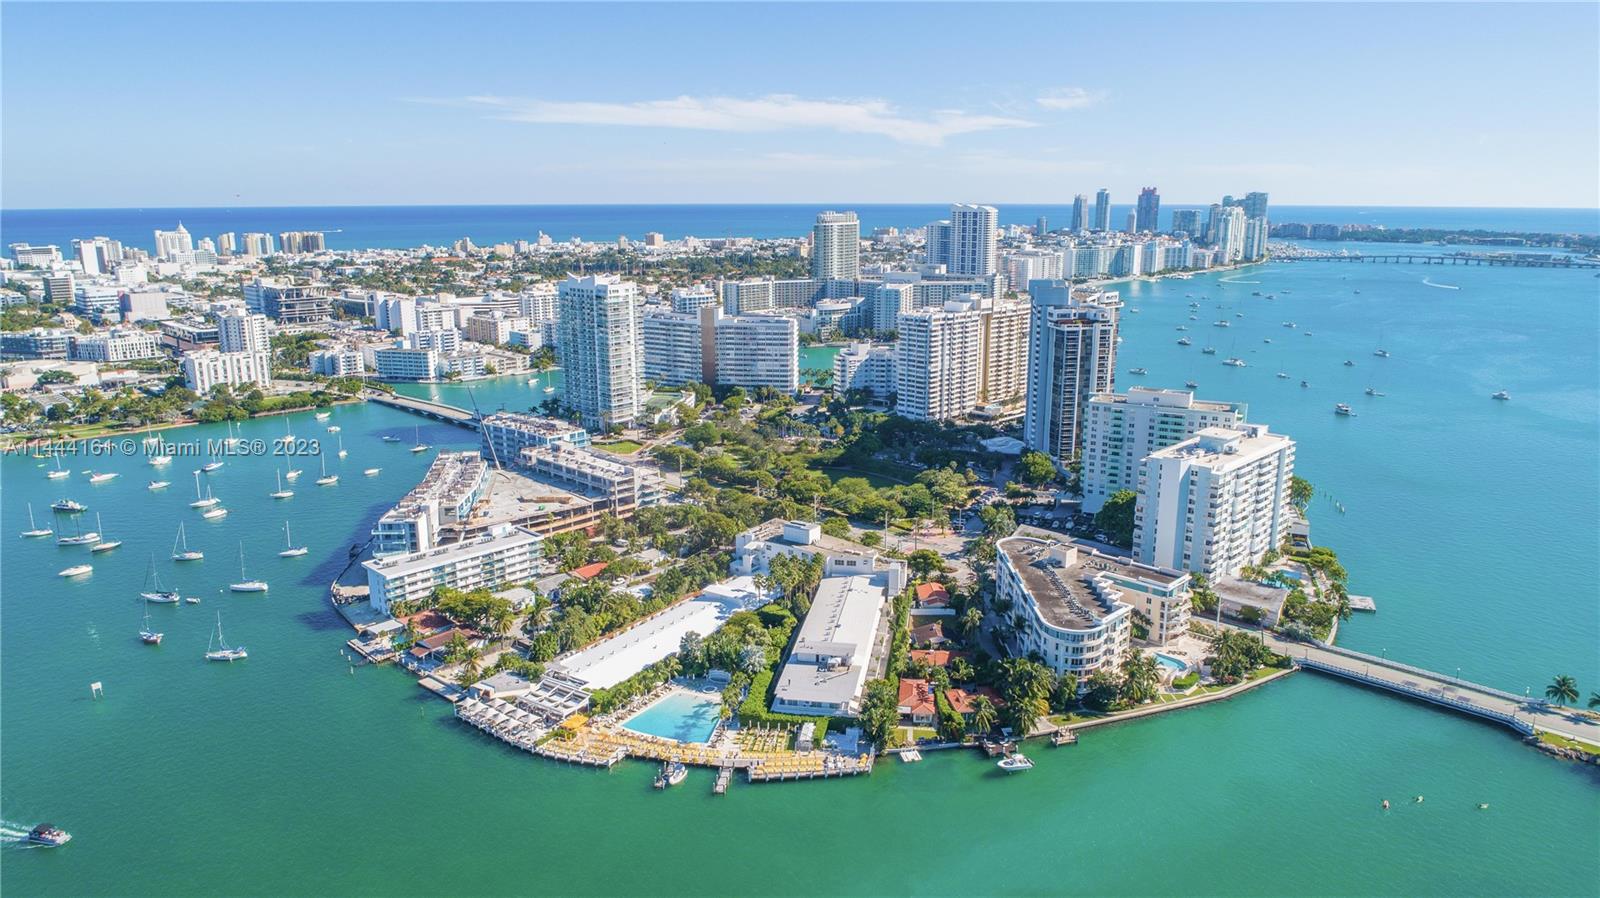 Vice City Marina  Dockage in Miami